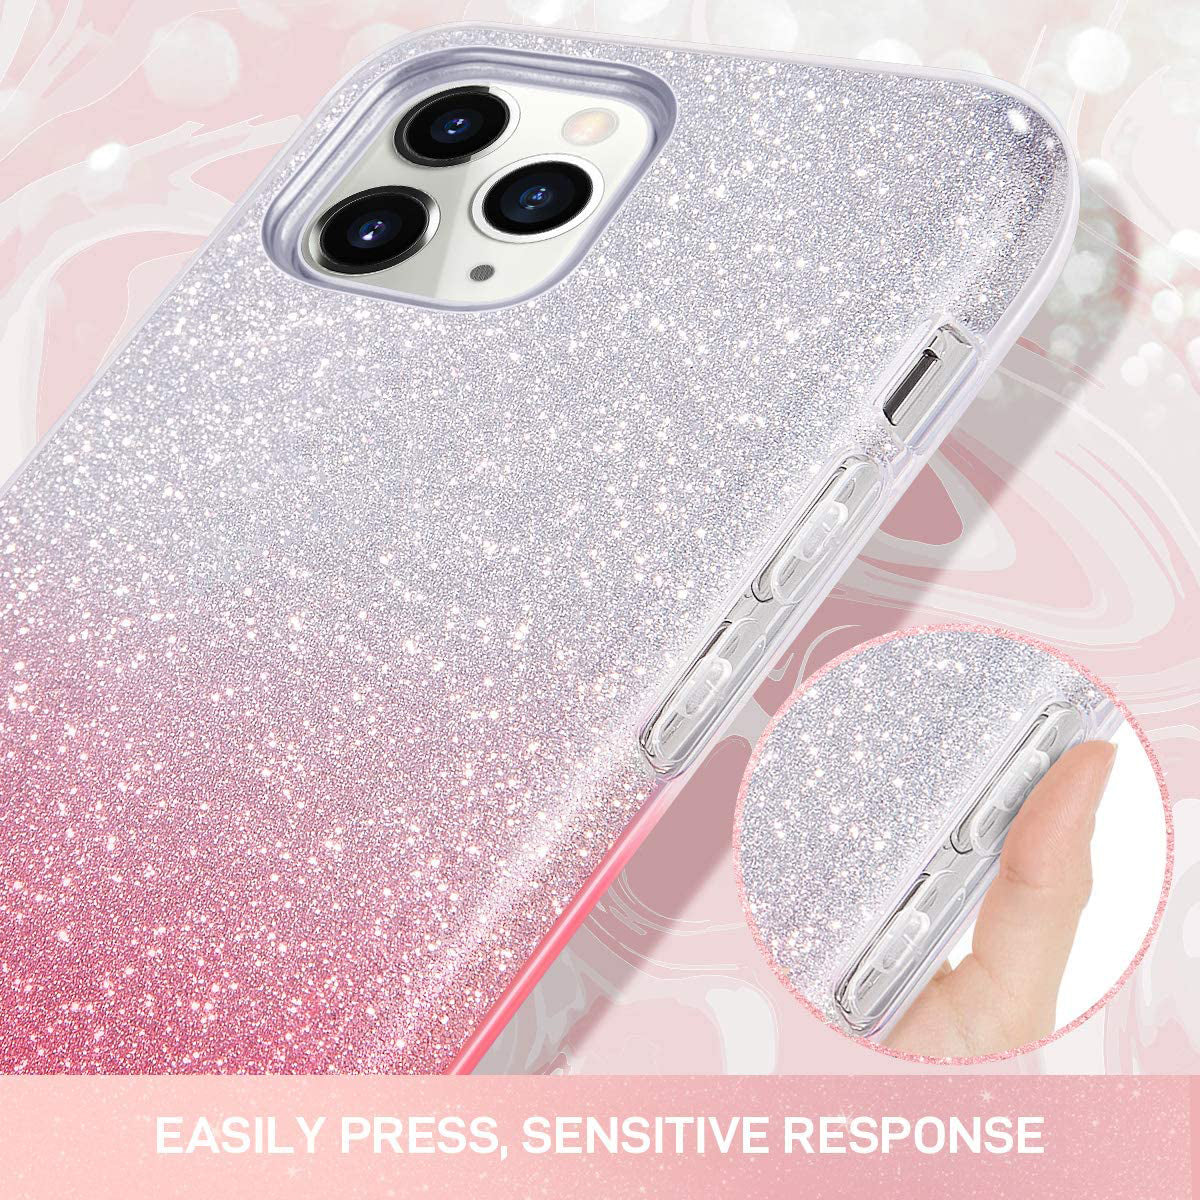 iPhone 11 Pro Sparkle Glitter TPU Case